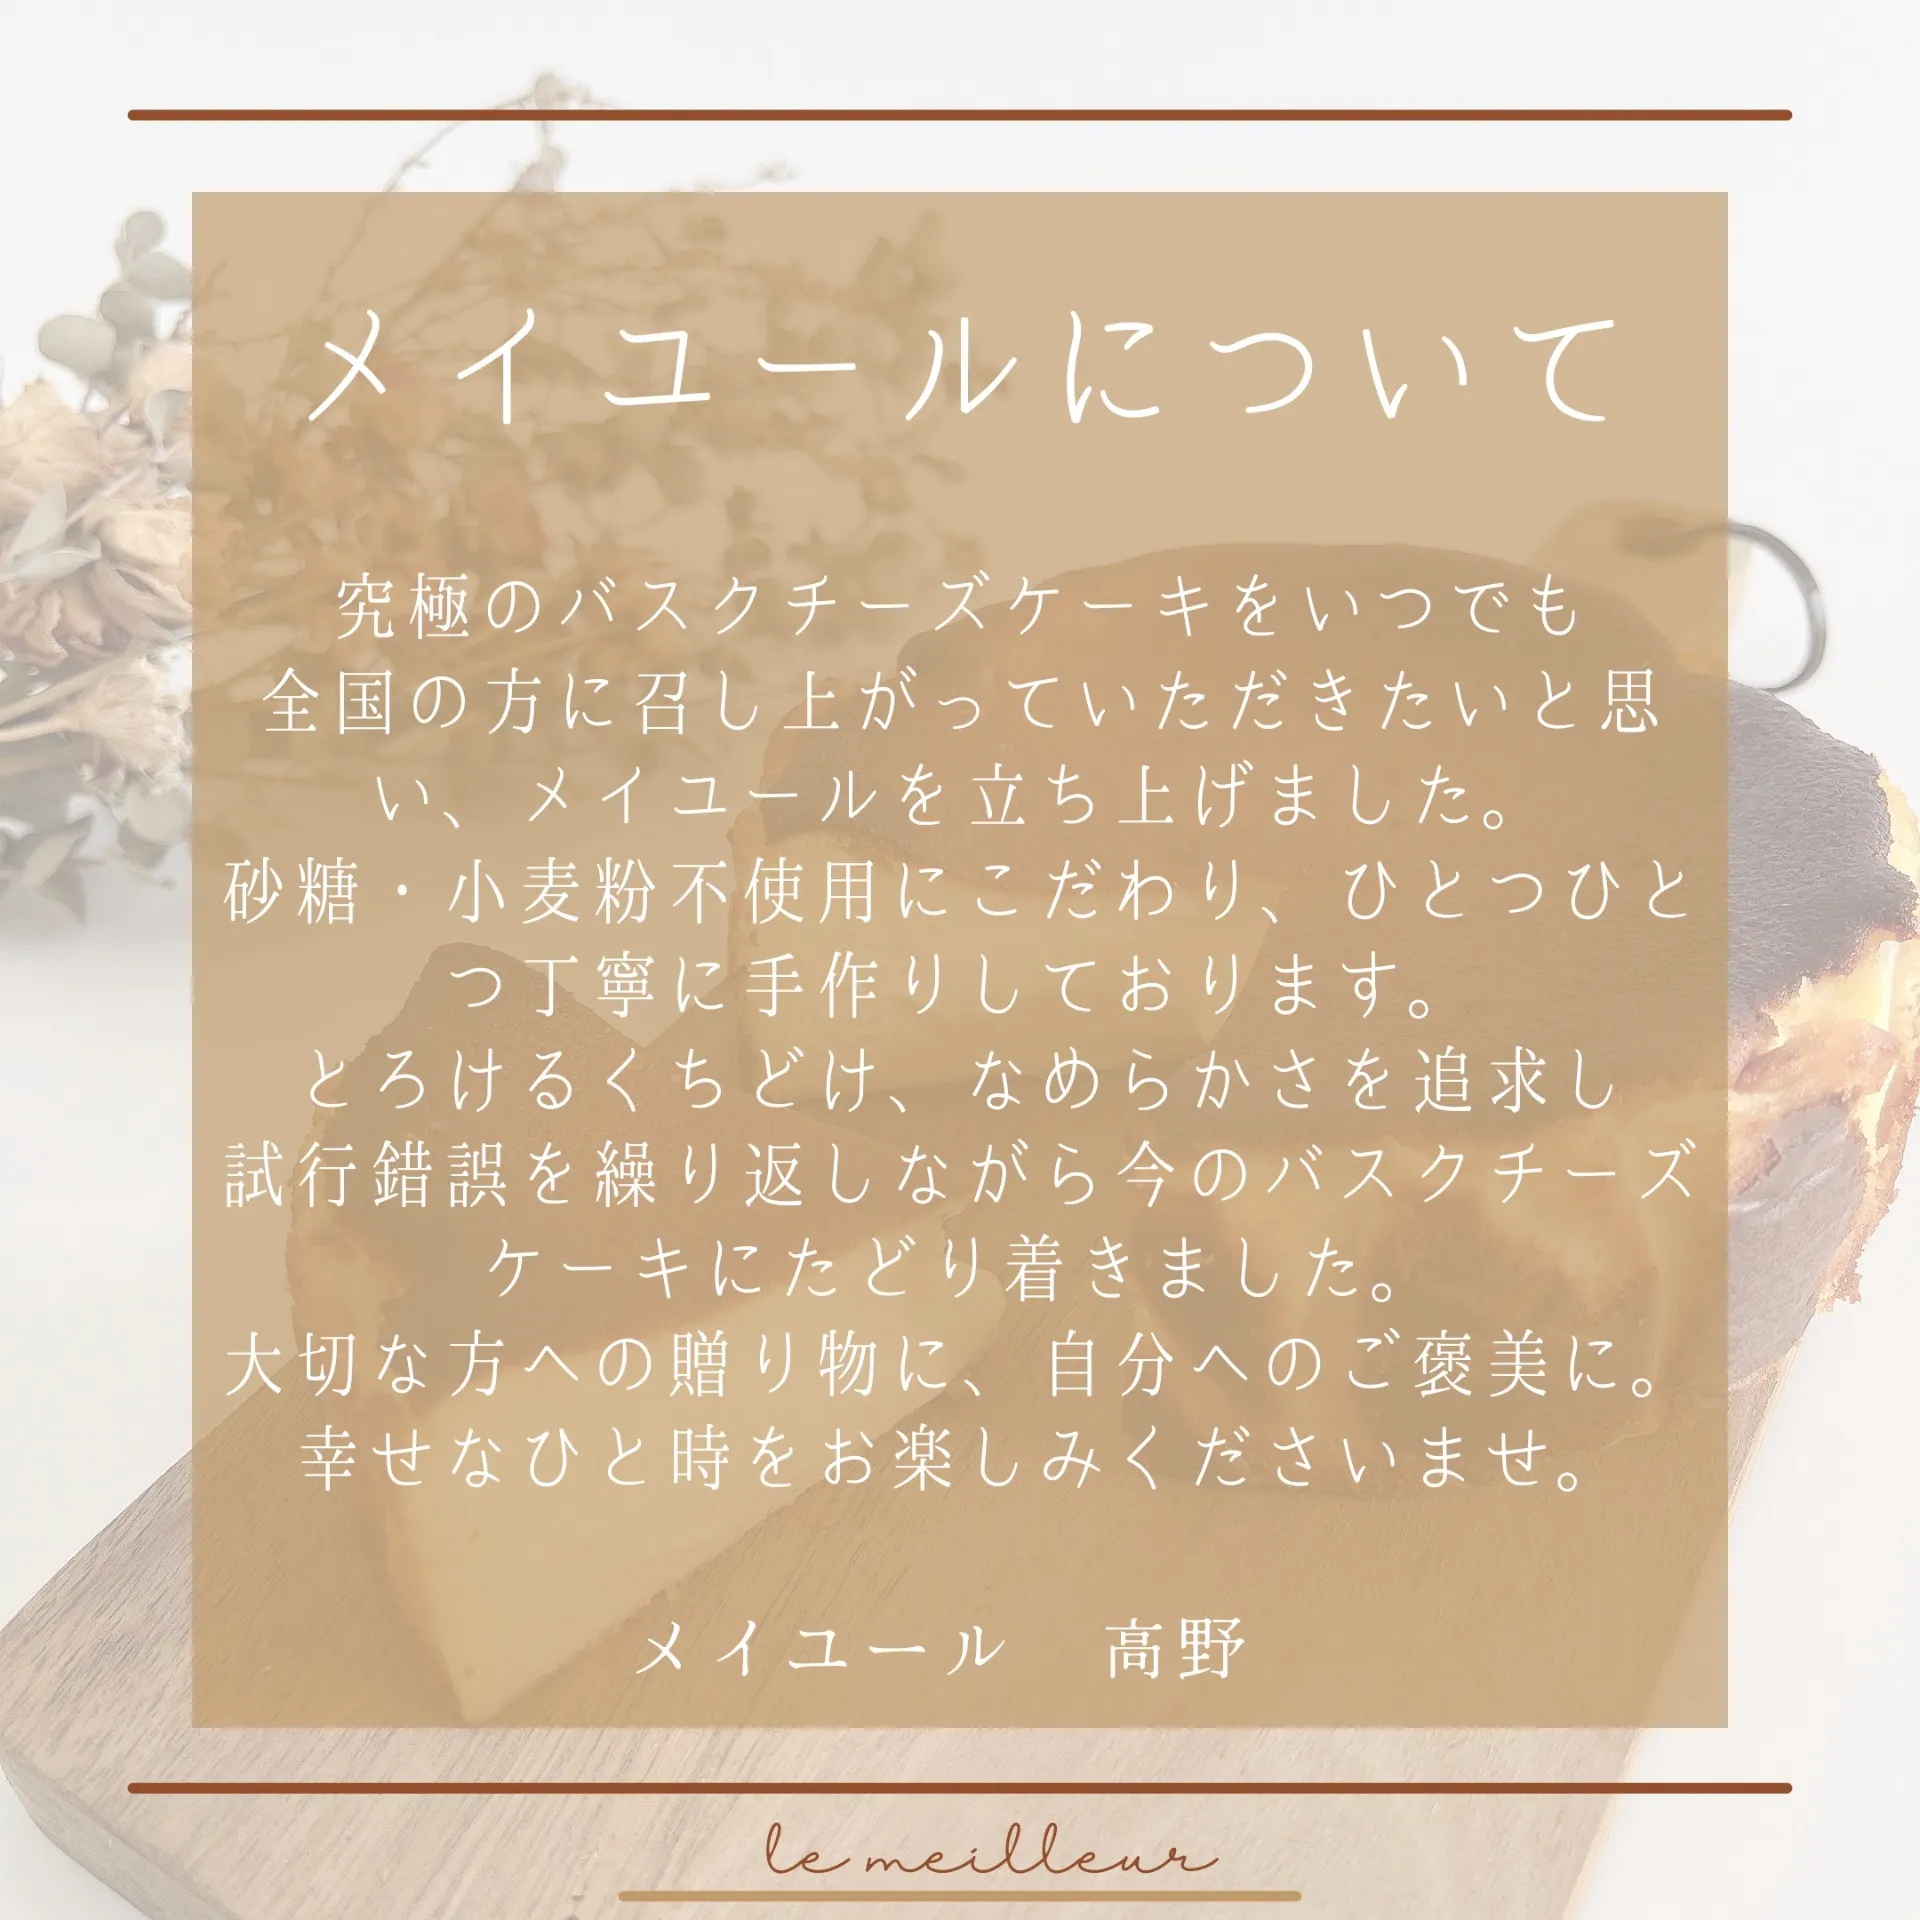 【砂糖・小麦粉不使用】とろけるバスクチーズケーキ  熨斗シール付き(ギフト用プレミアム)